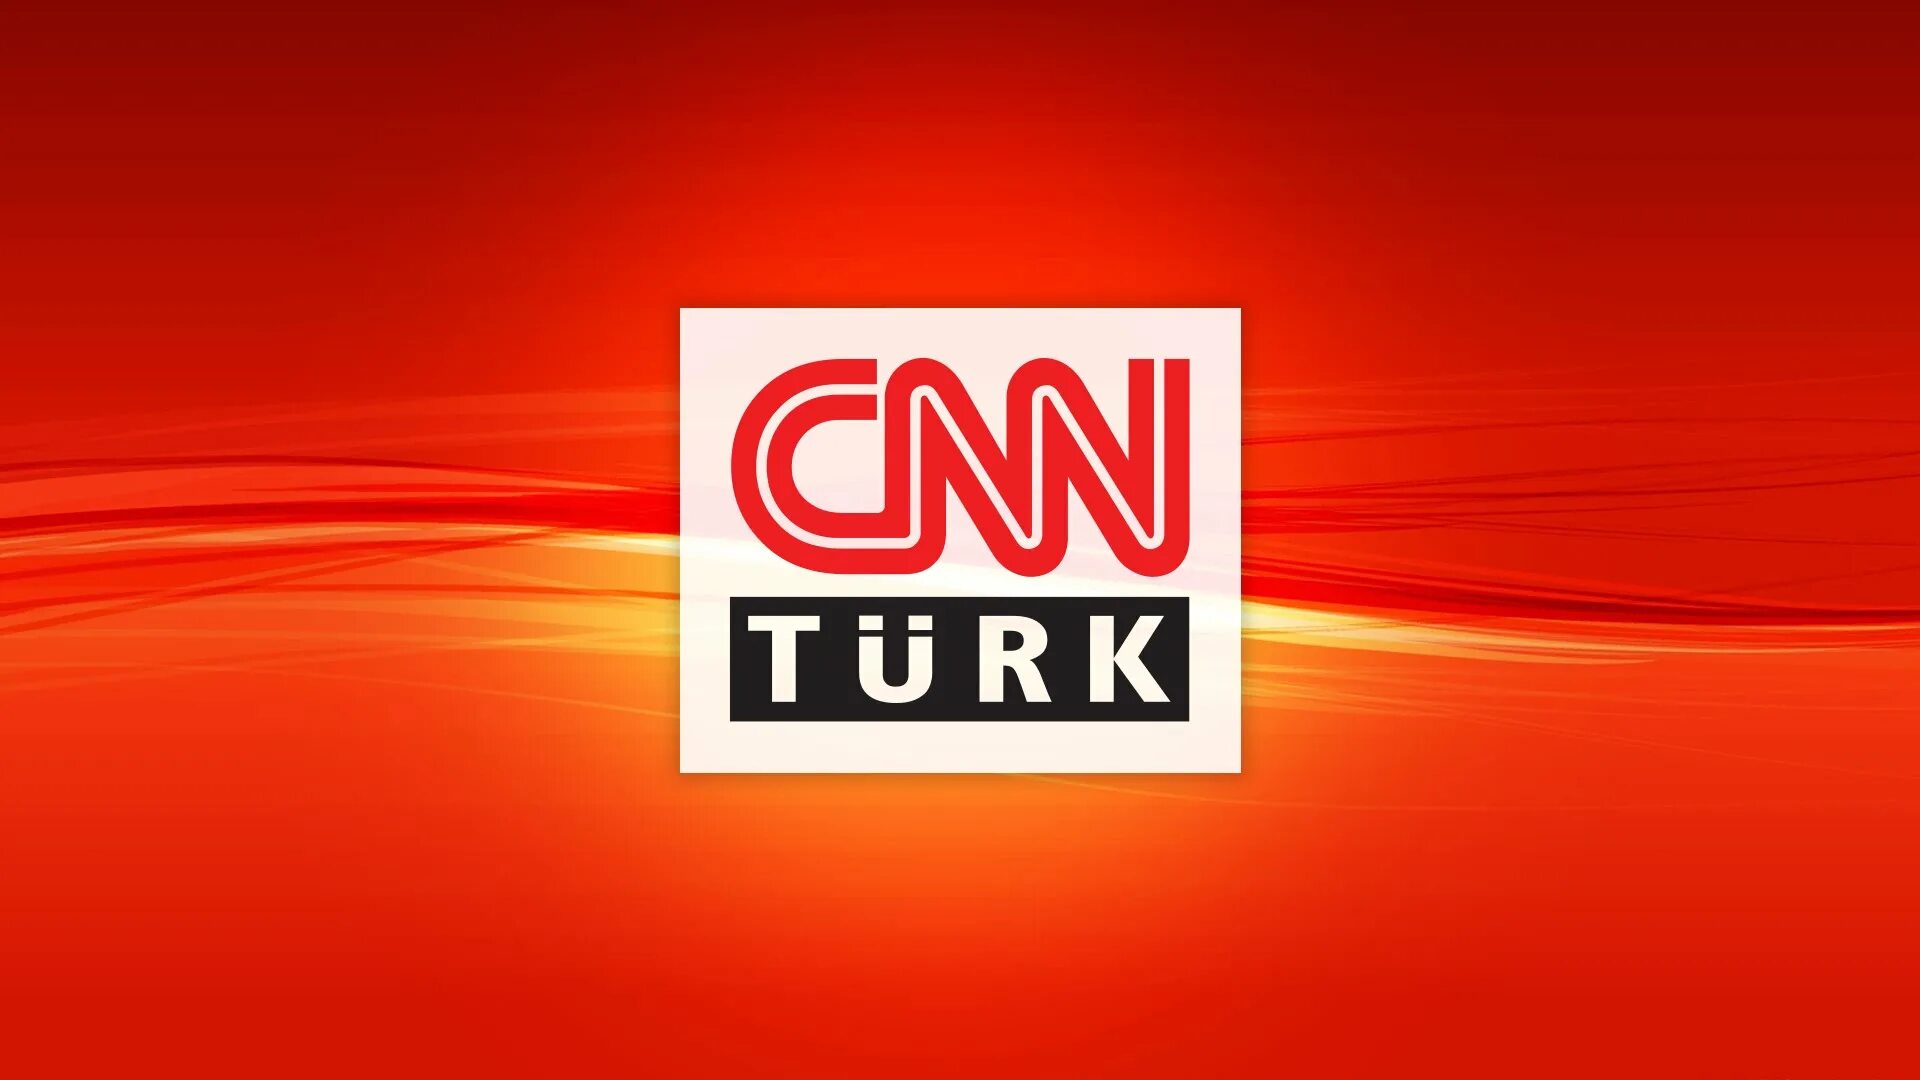 Рабочий сайт турк тв. CNN. CNN TV. СНН турк. CNN Turk logo.